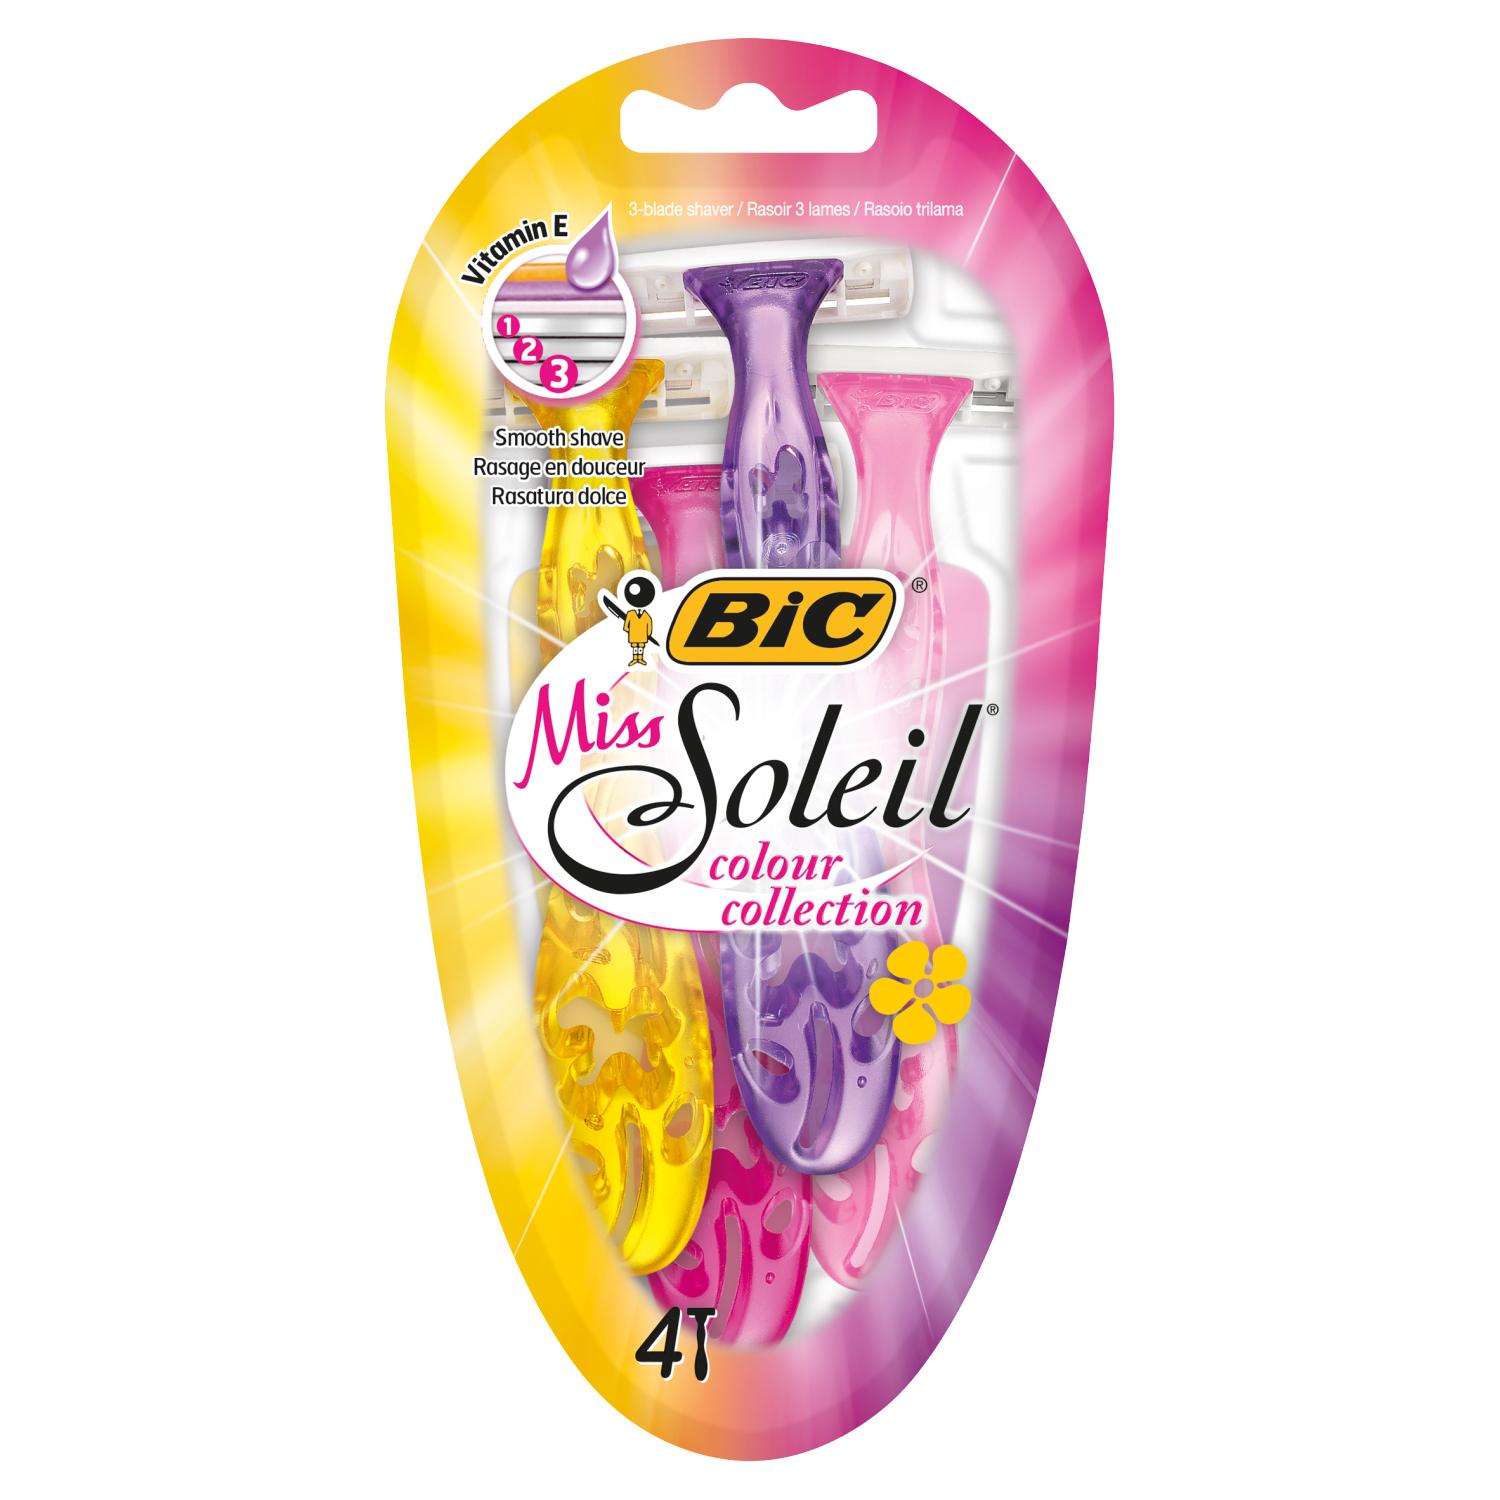 Bic Miss Soleil Colour Collection женская бритва, 4 шт/1 упаковка